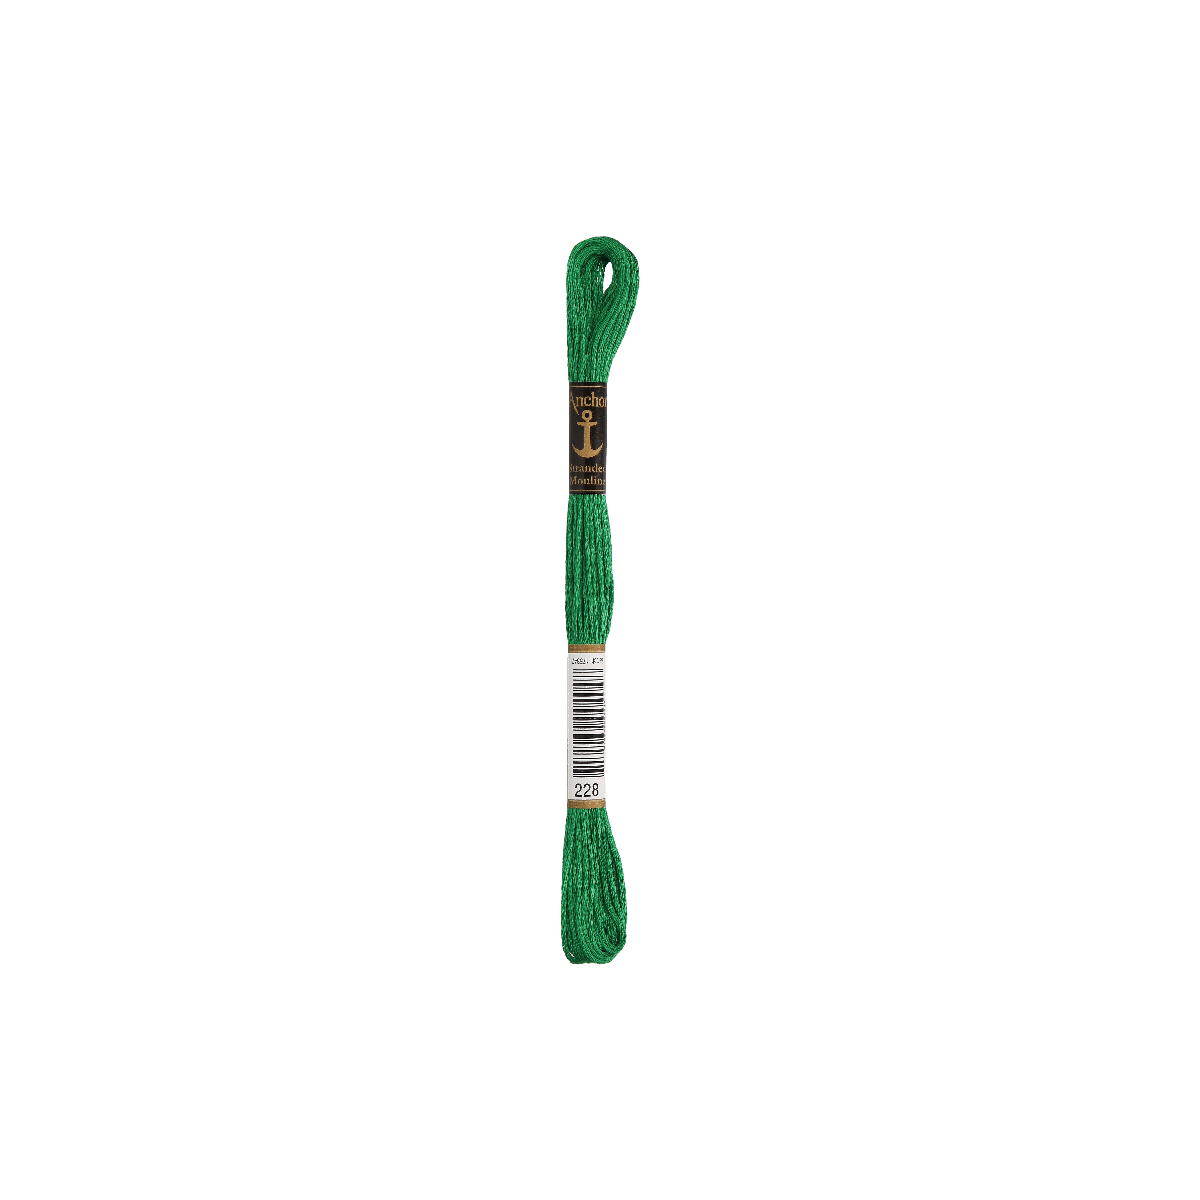 Anchor Torsade 8m, vert, coton, couleur 228, 6 fils